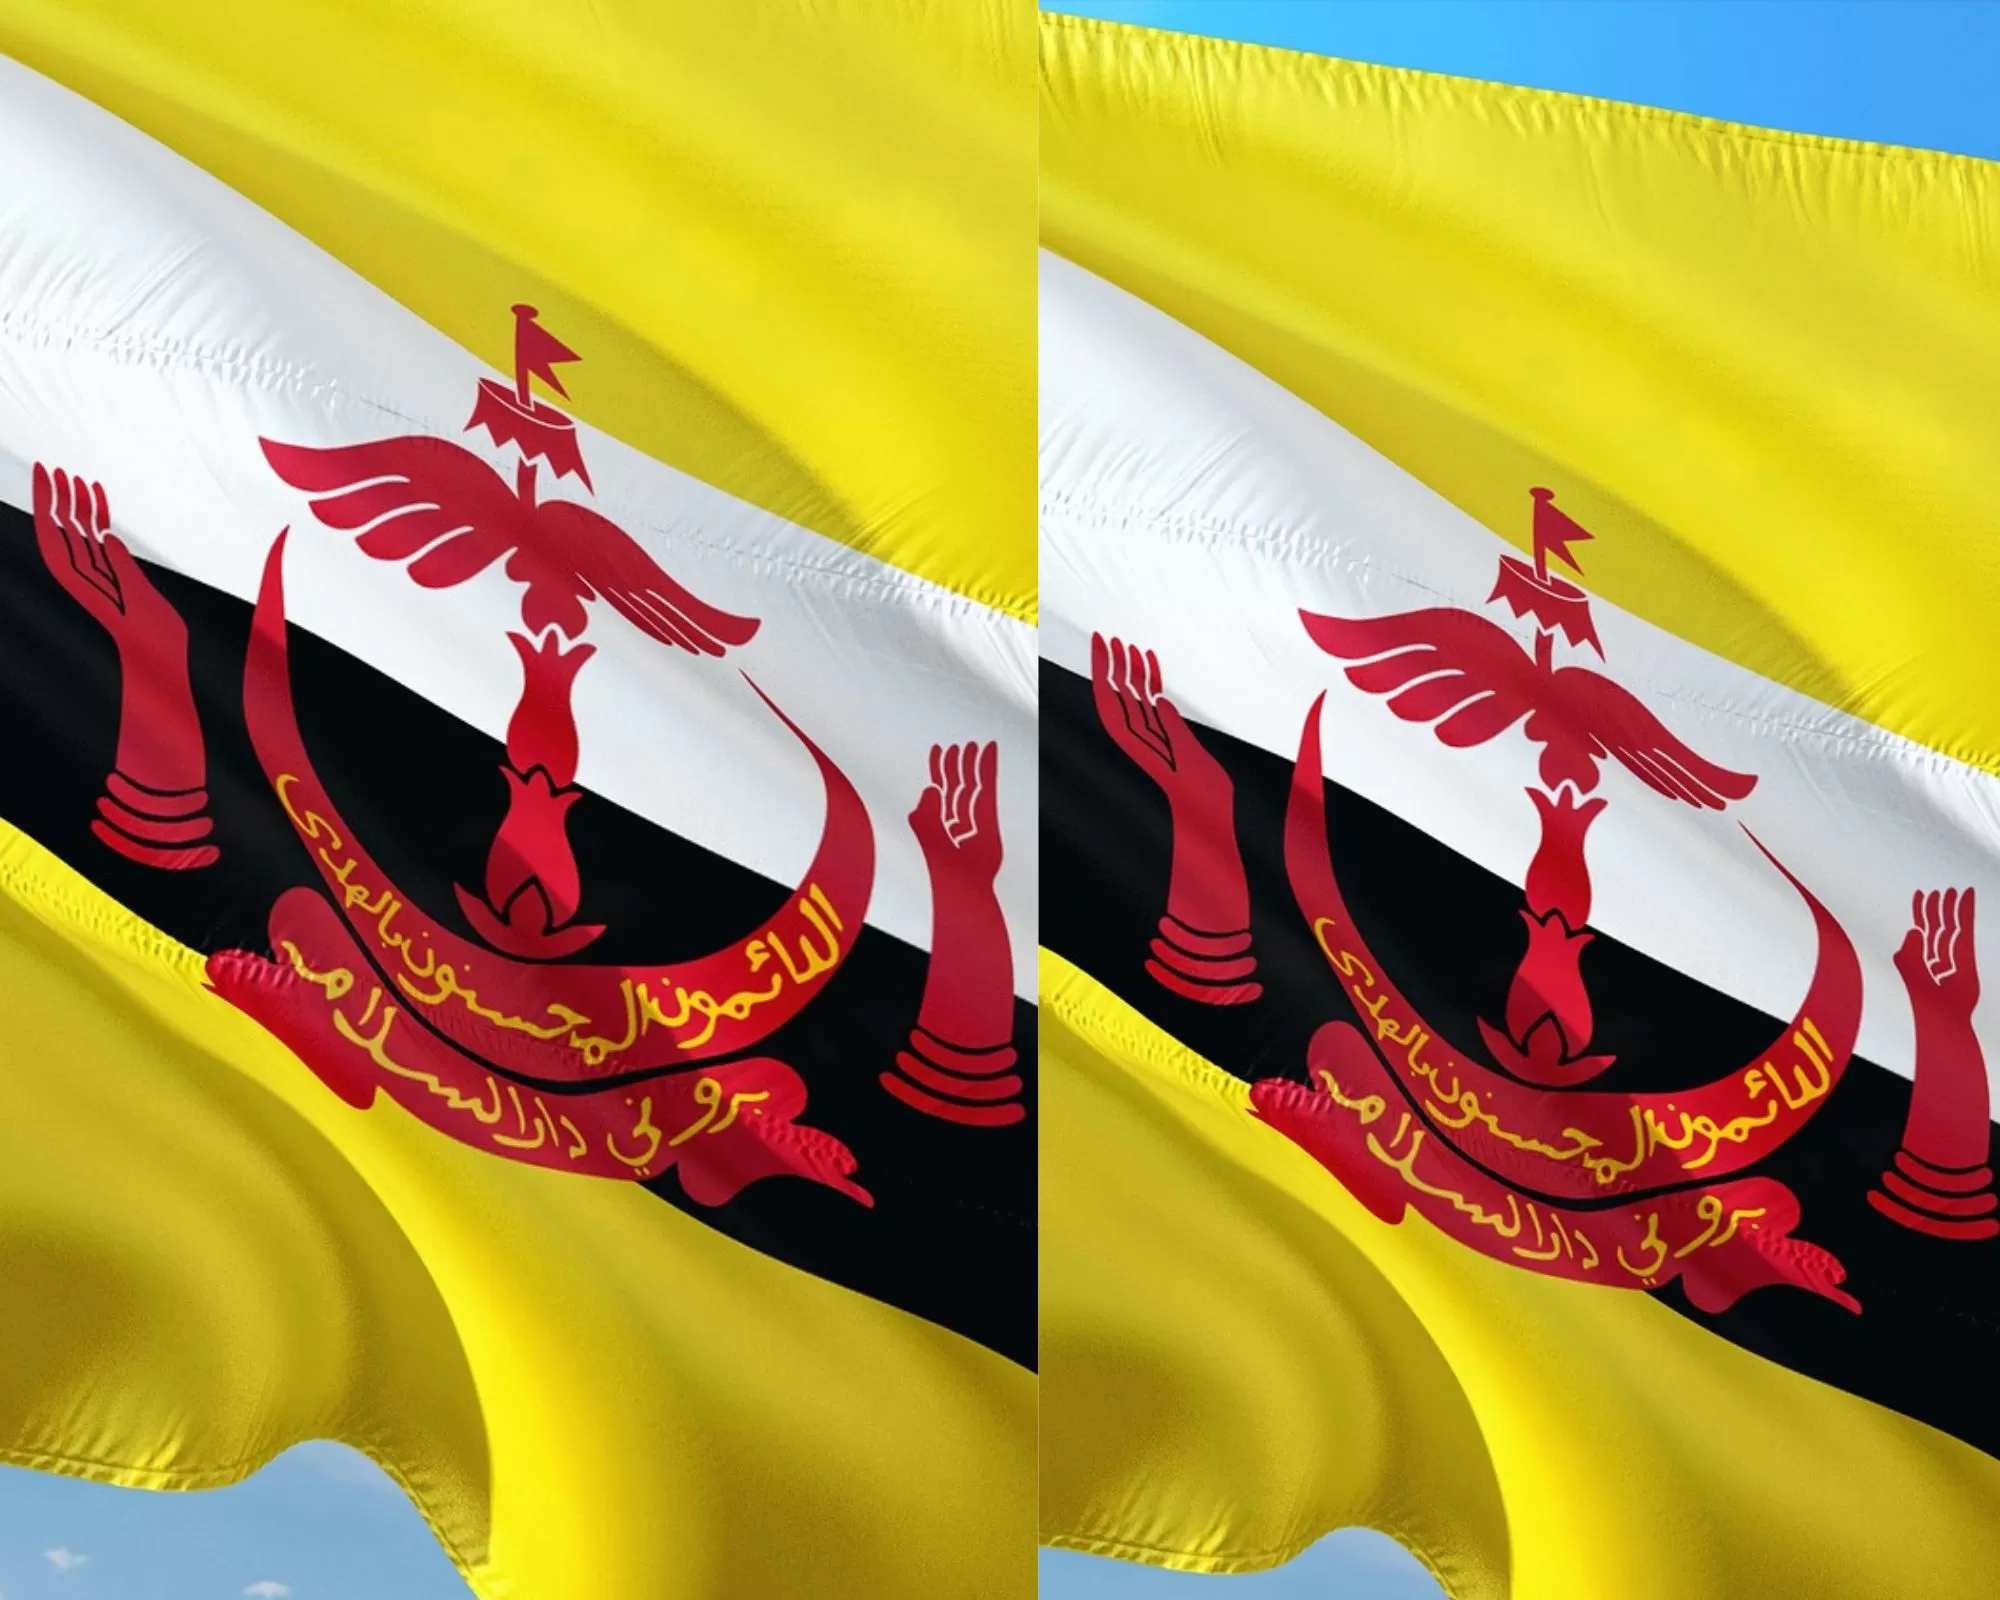 Negara Brunei, Sebuah Negara Terkecil Di Dunia, Namun Memiliki Sejarah, Budaya, Dan Ekonomi yang Kaya